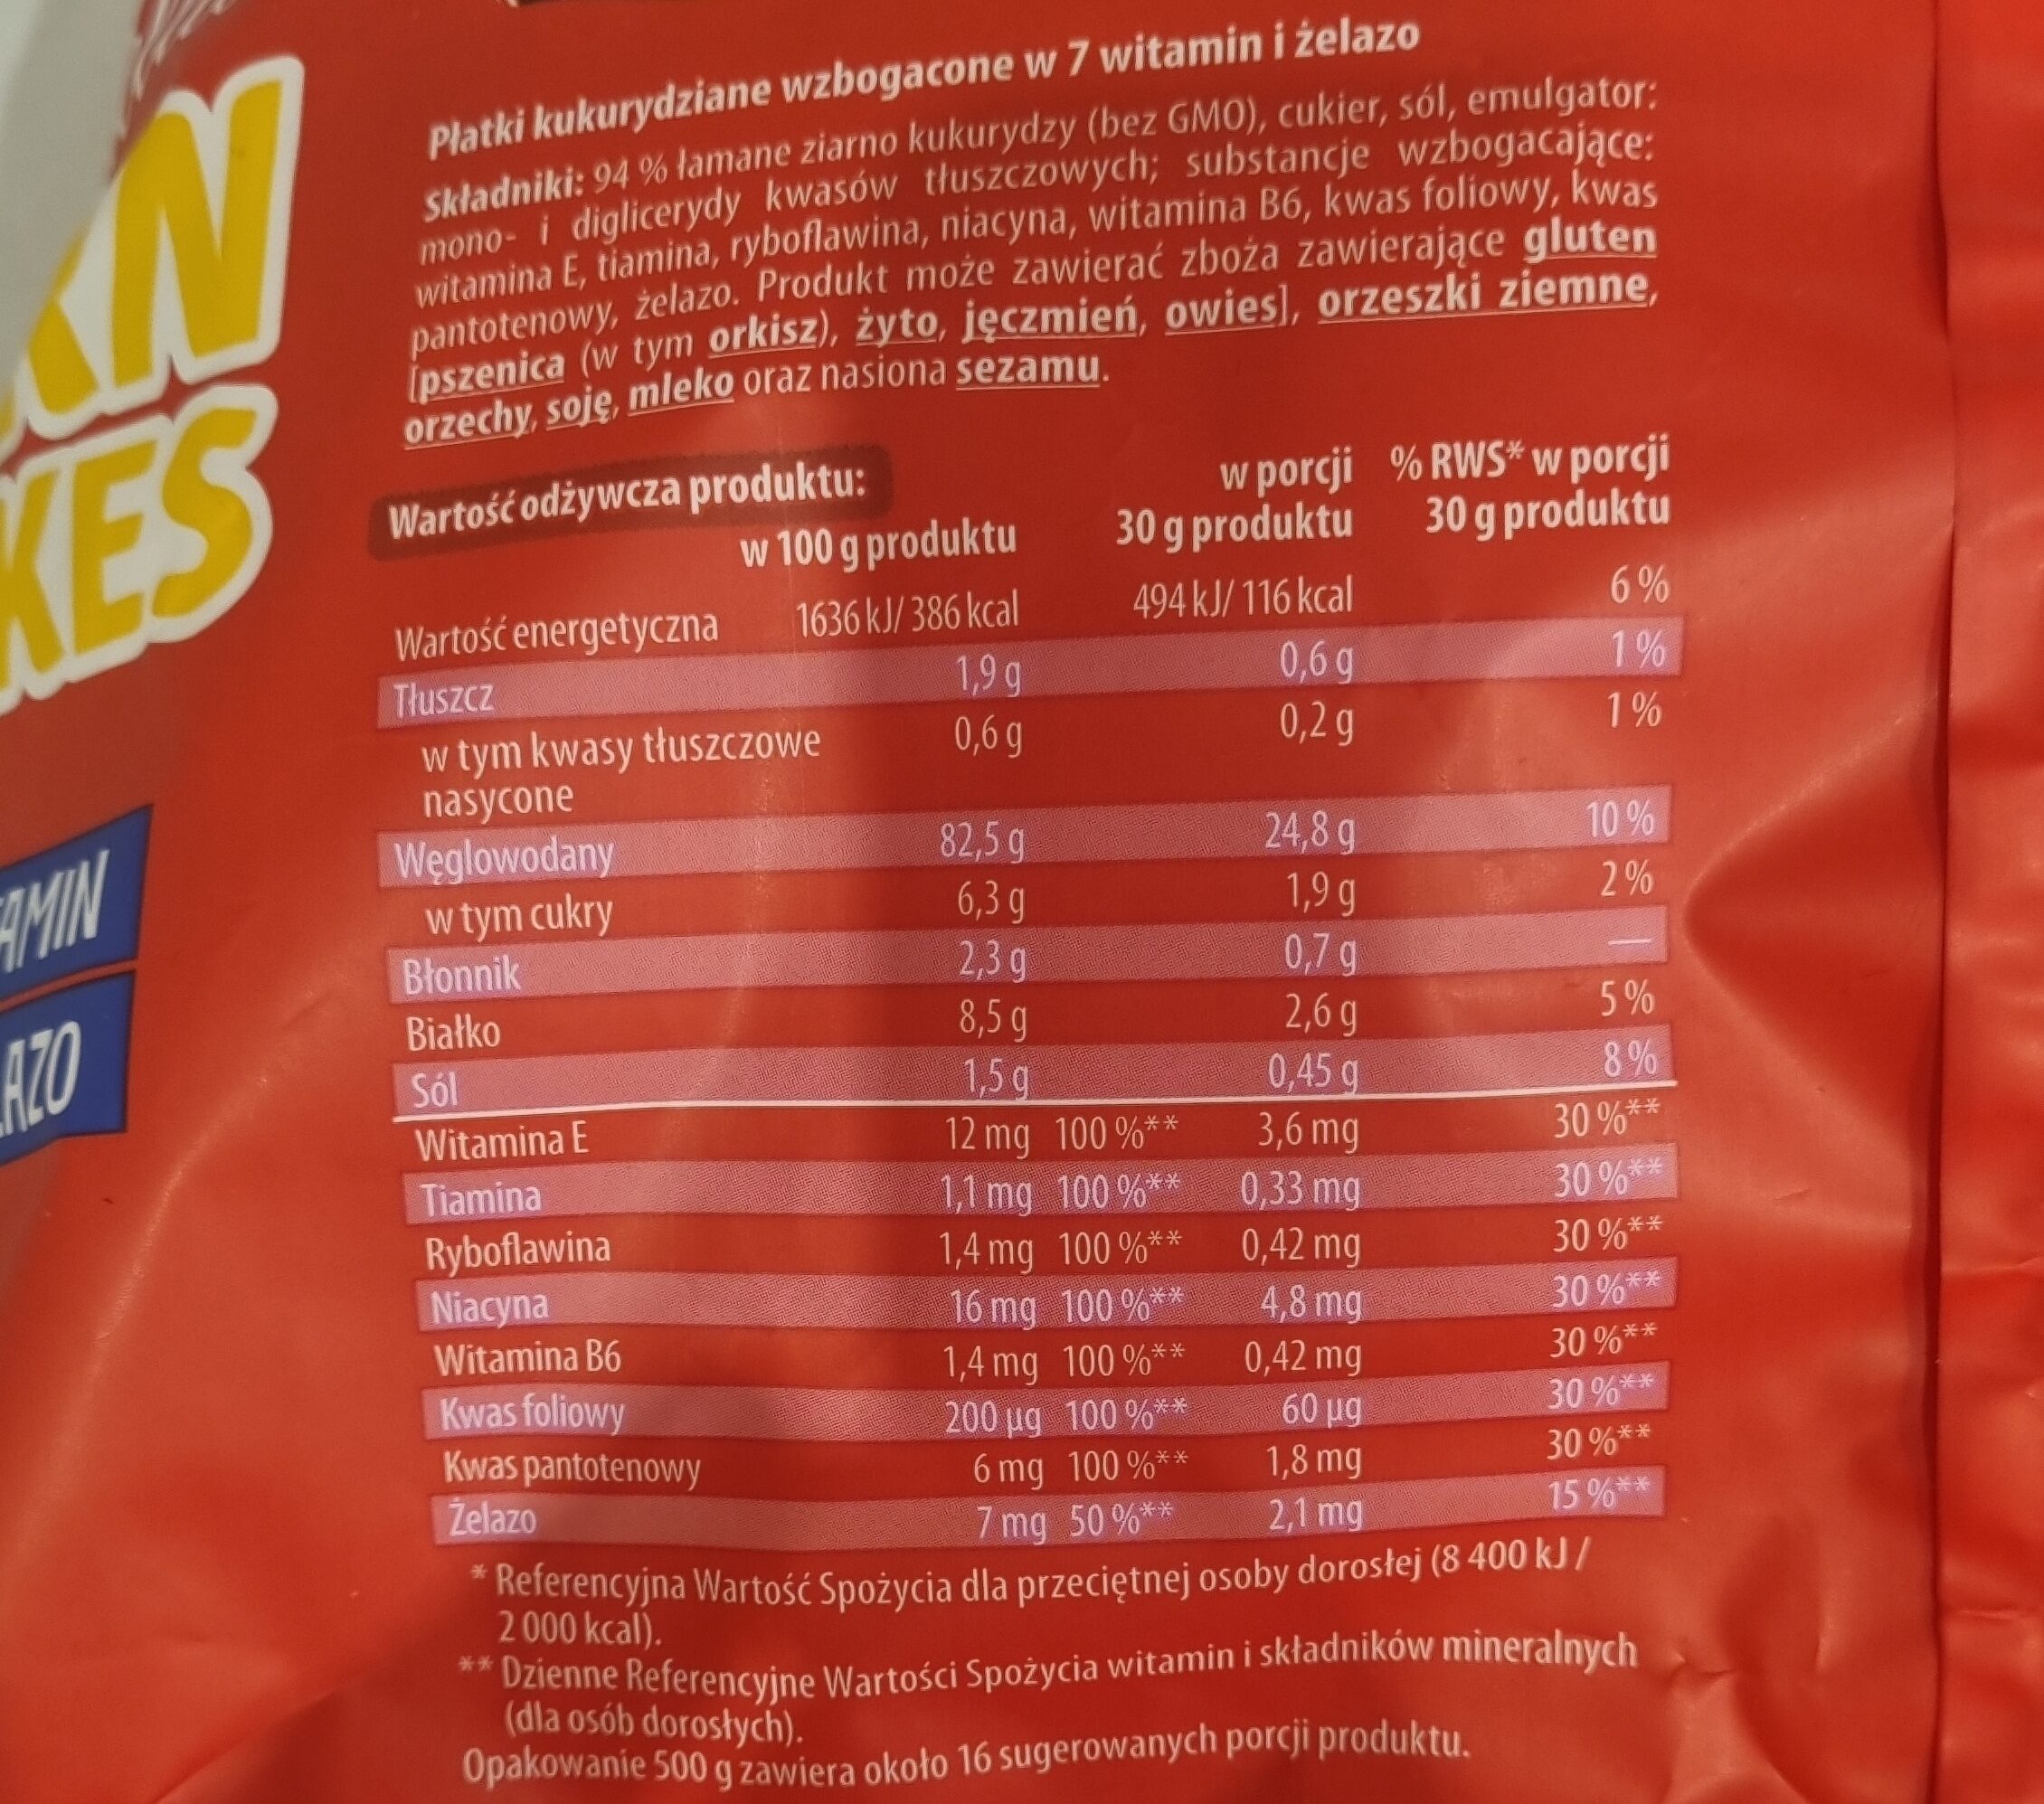 Corn Flakes - Wartości odżywcze - en